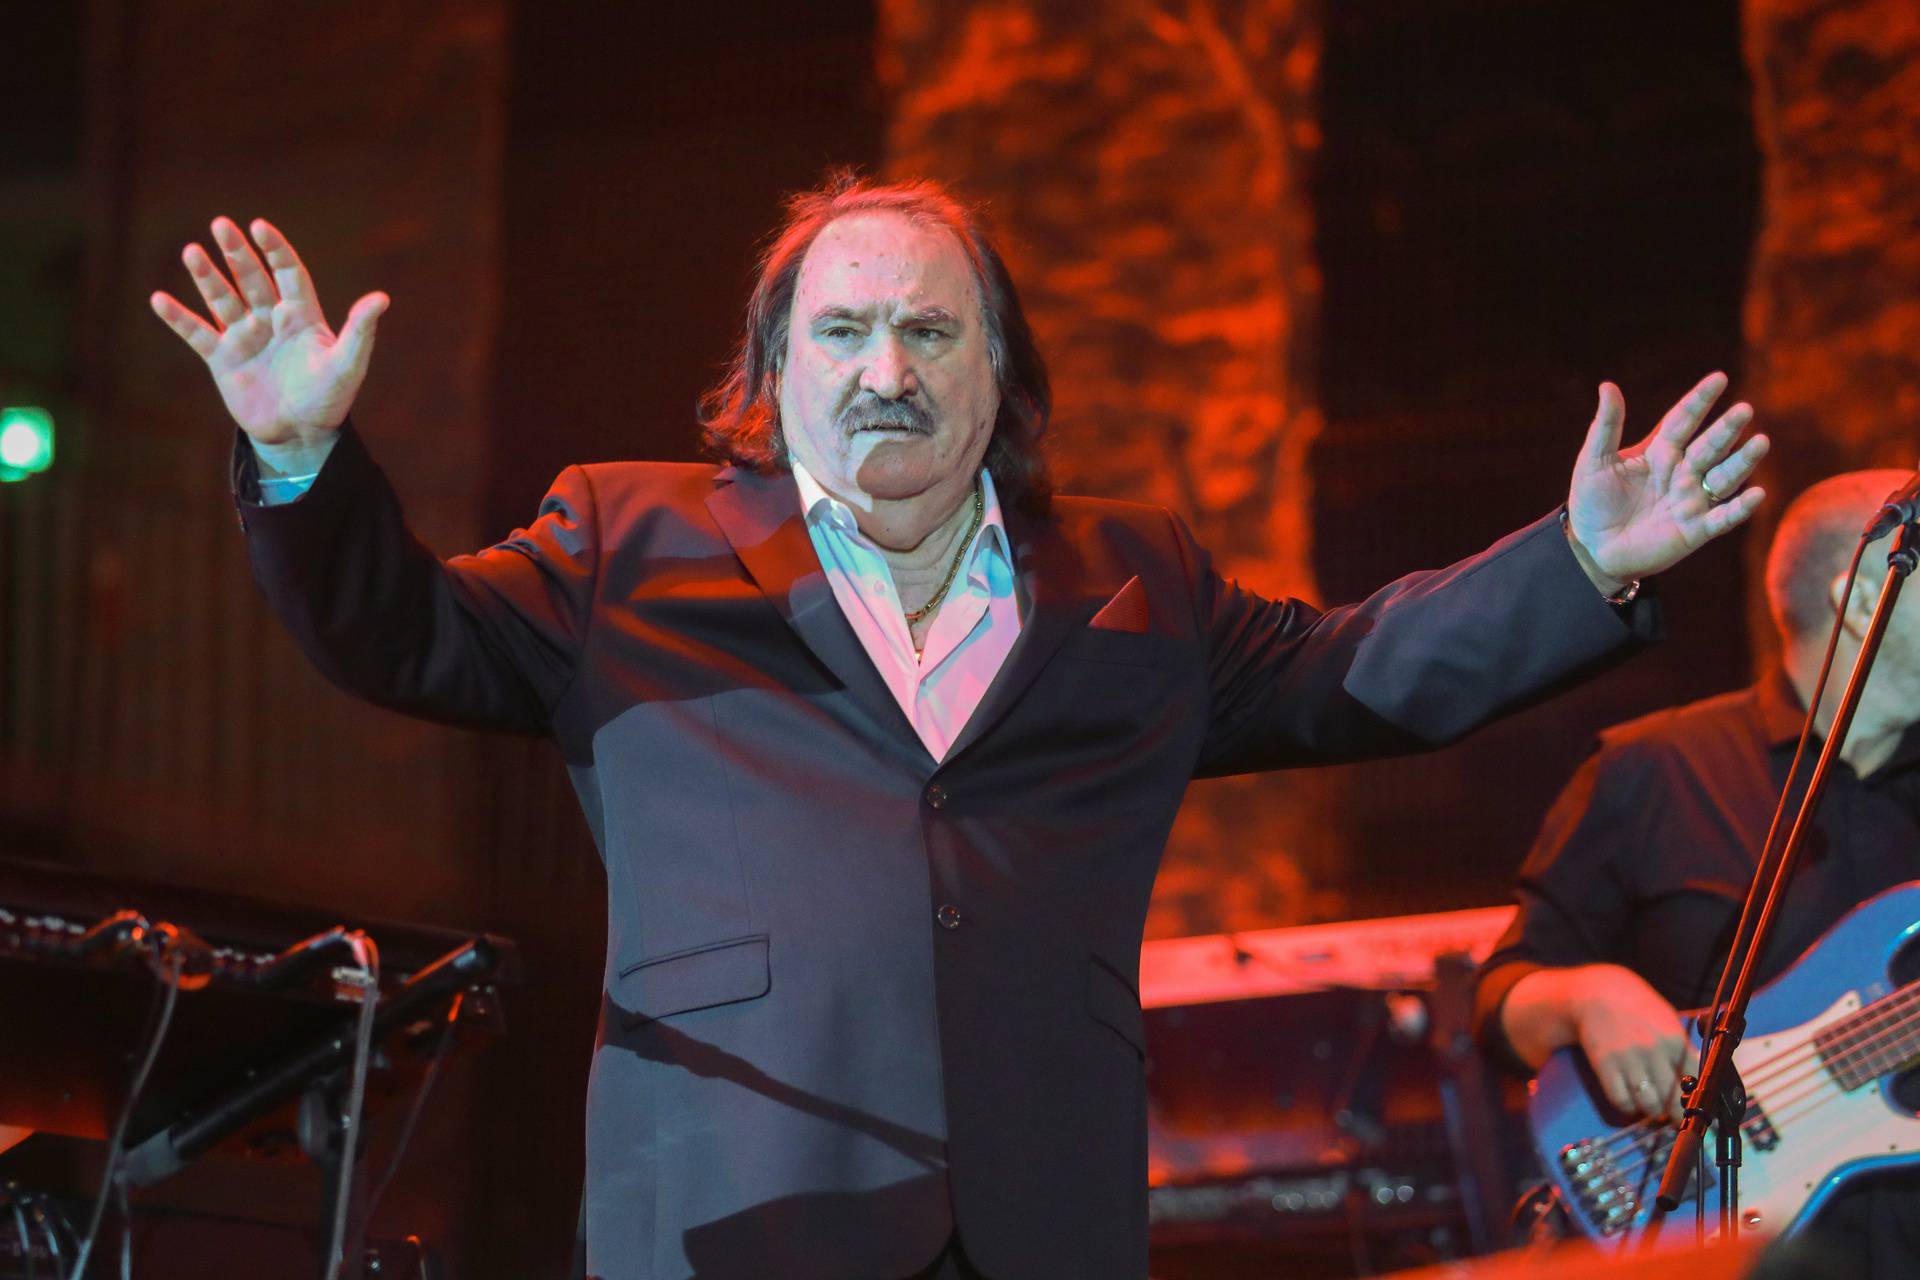 Mišo sprema spektakl u Splitu, Lino Červar pozvao sve na koncert: 'Dođimo mu reći hvala